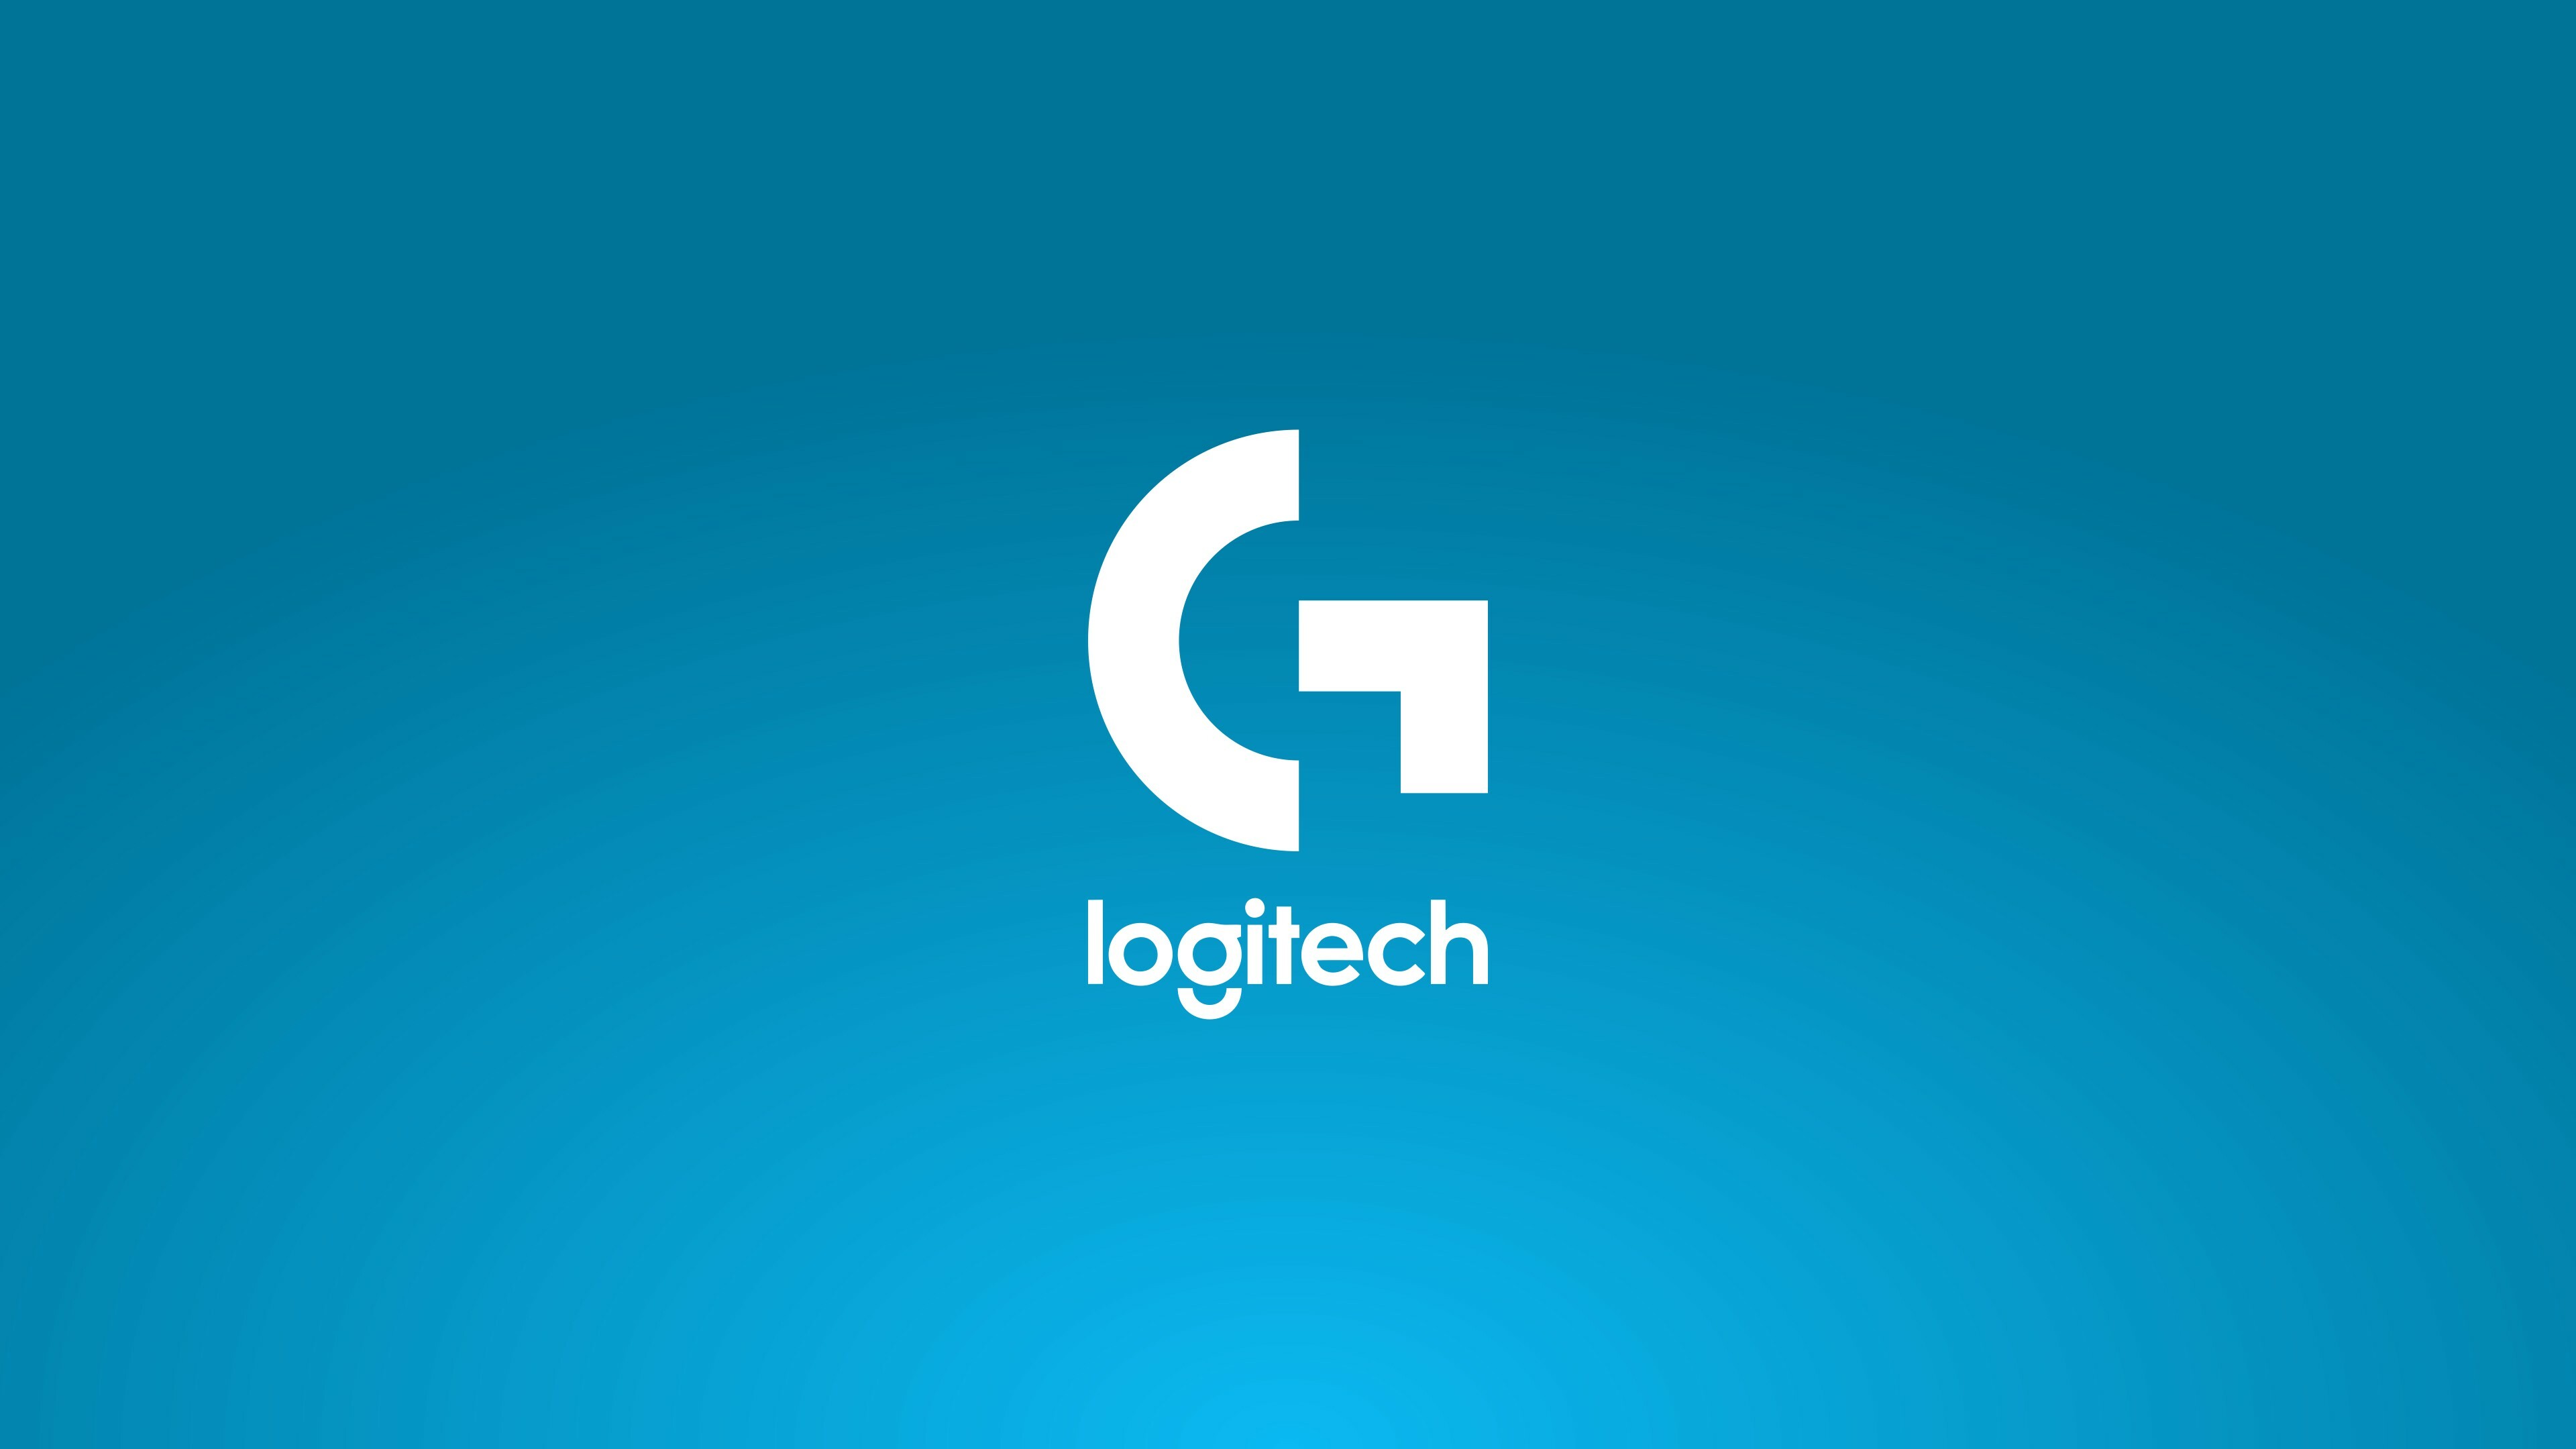 Logitech products, Cutting-edge technology, Sleek design, High performance, 3840x2160 4K Desktop